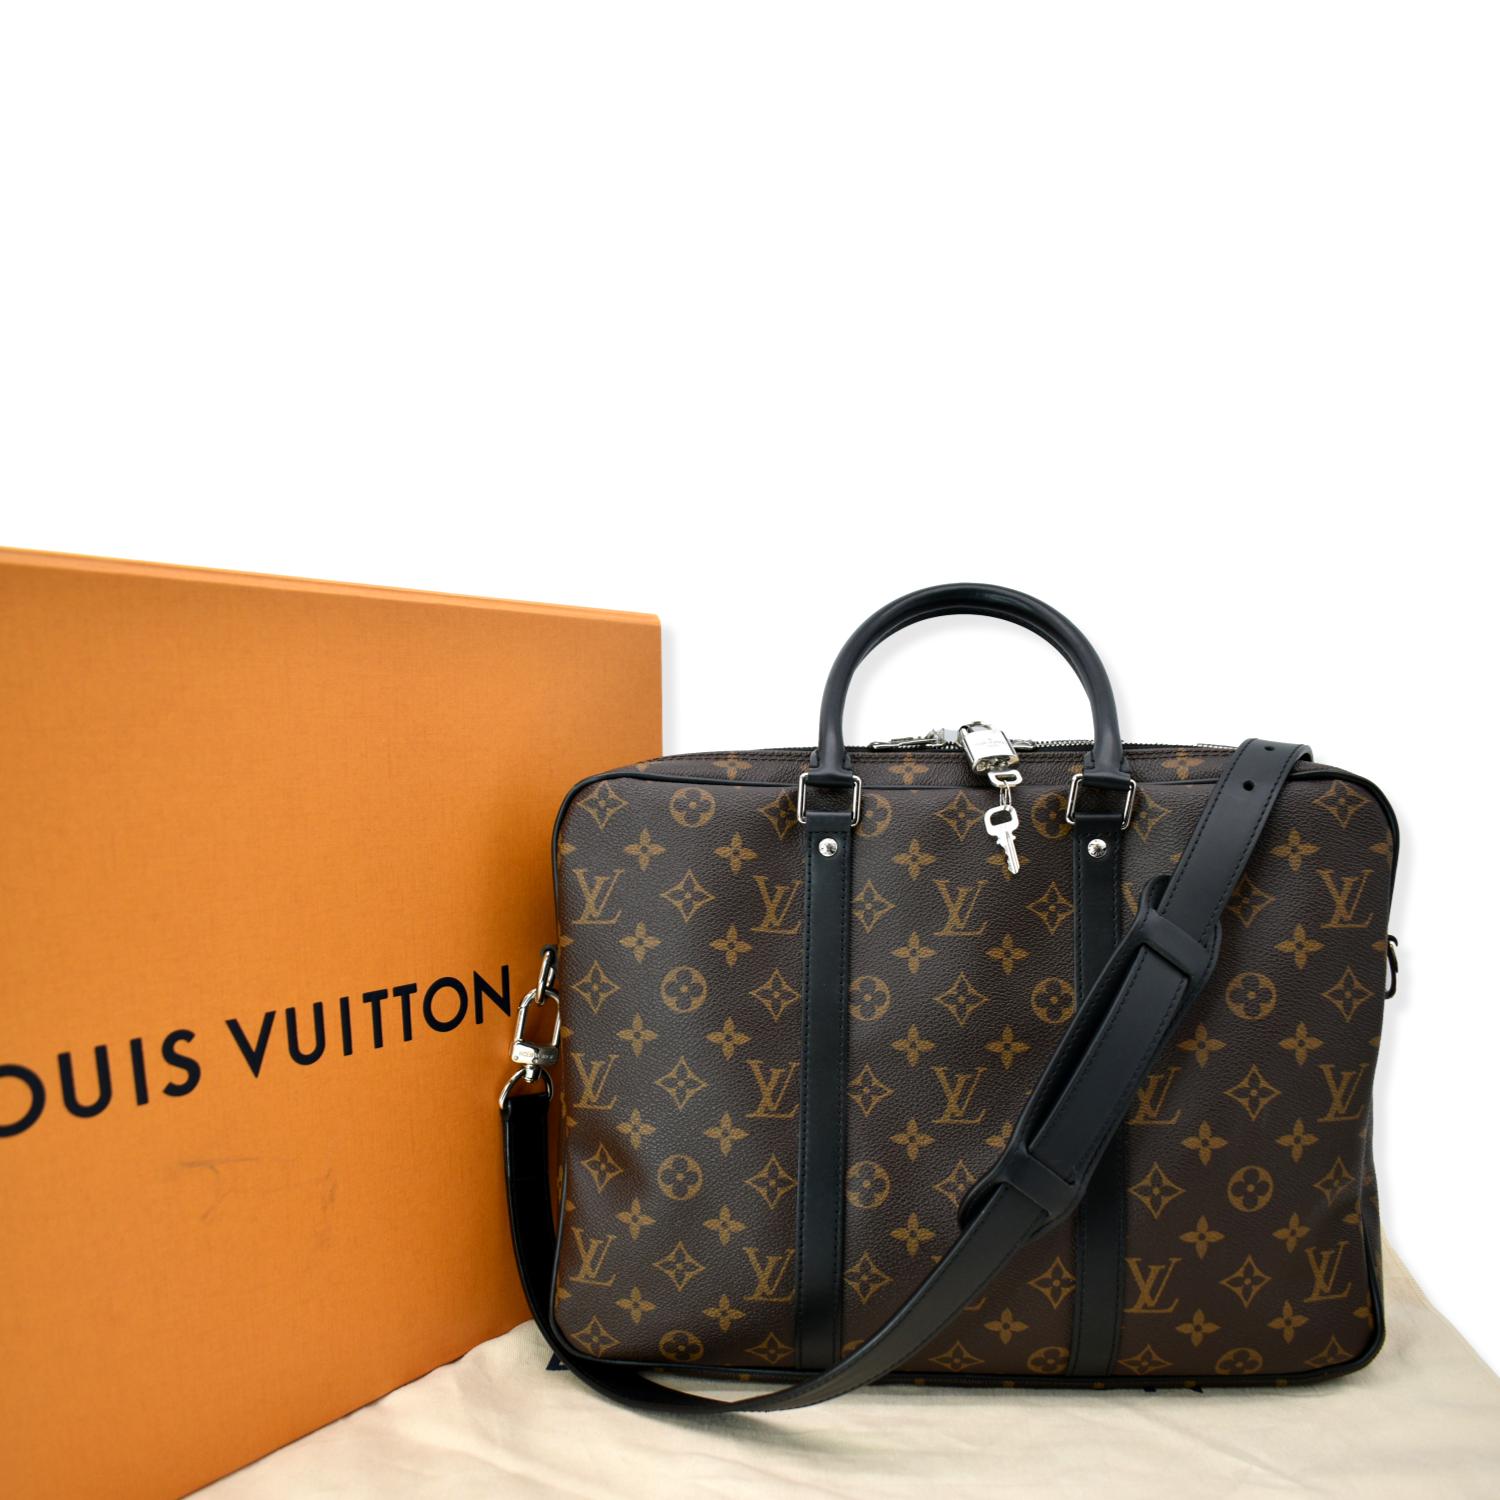 Louis Vuitton Porte documents voyage pm 